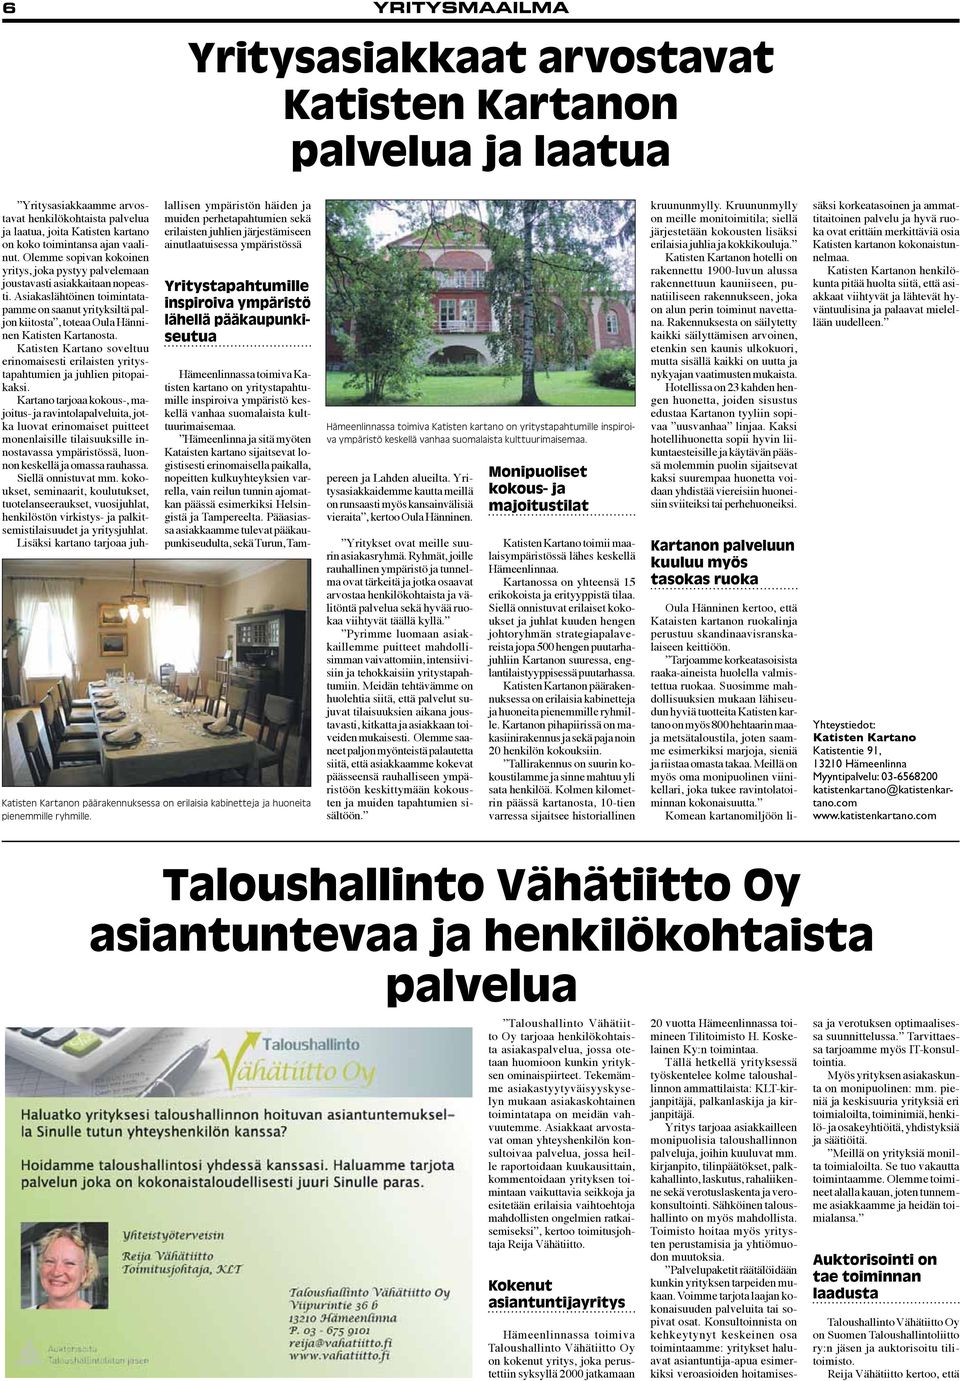 Asiakaslähtöinen toimintatapamme on saanut yrityksiltä paljon kiitosta, toteaa Oula Hänninen Katisten Kartanosta.